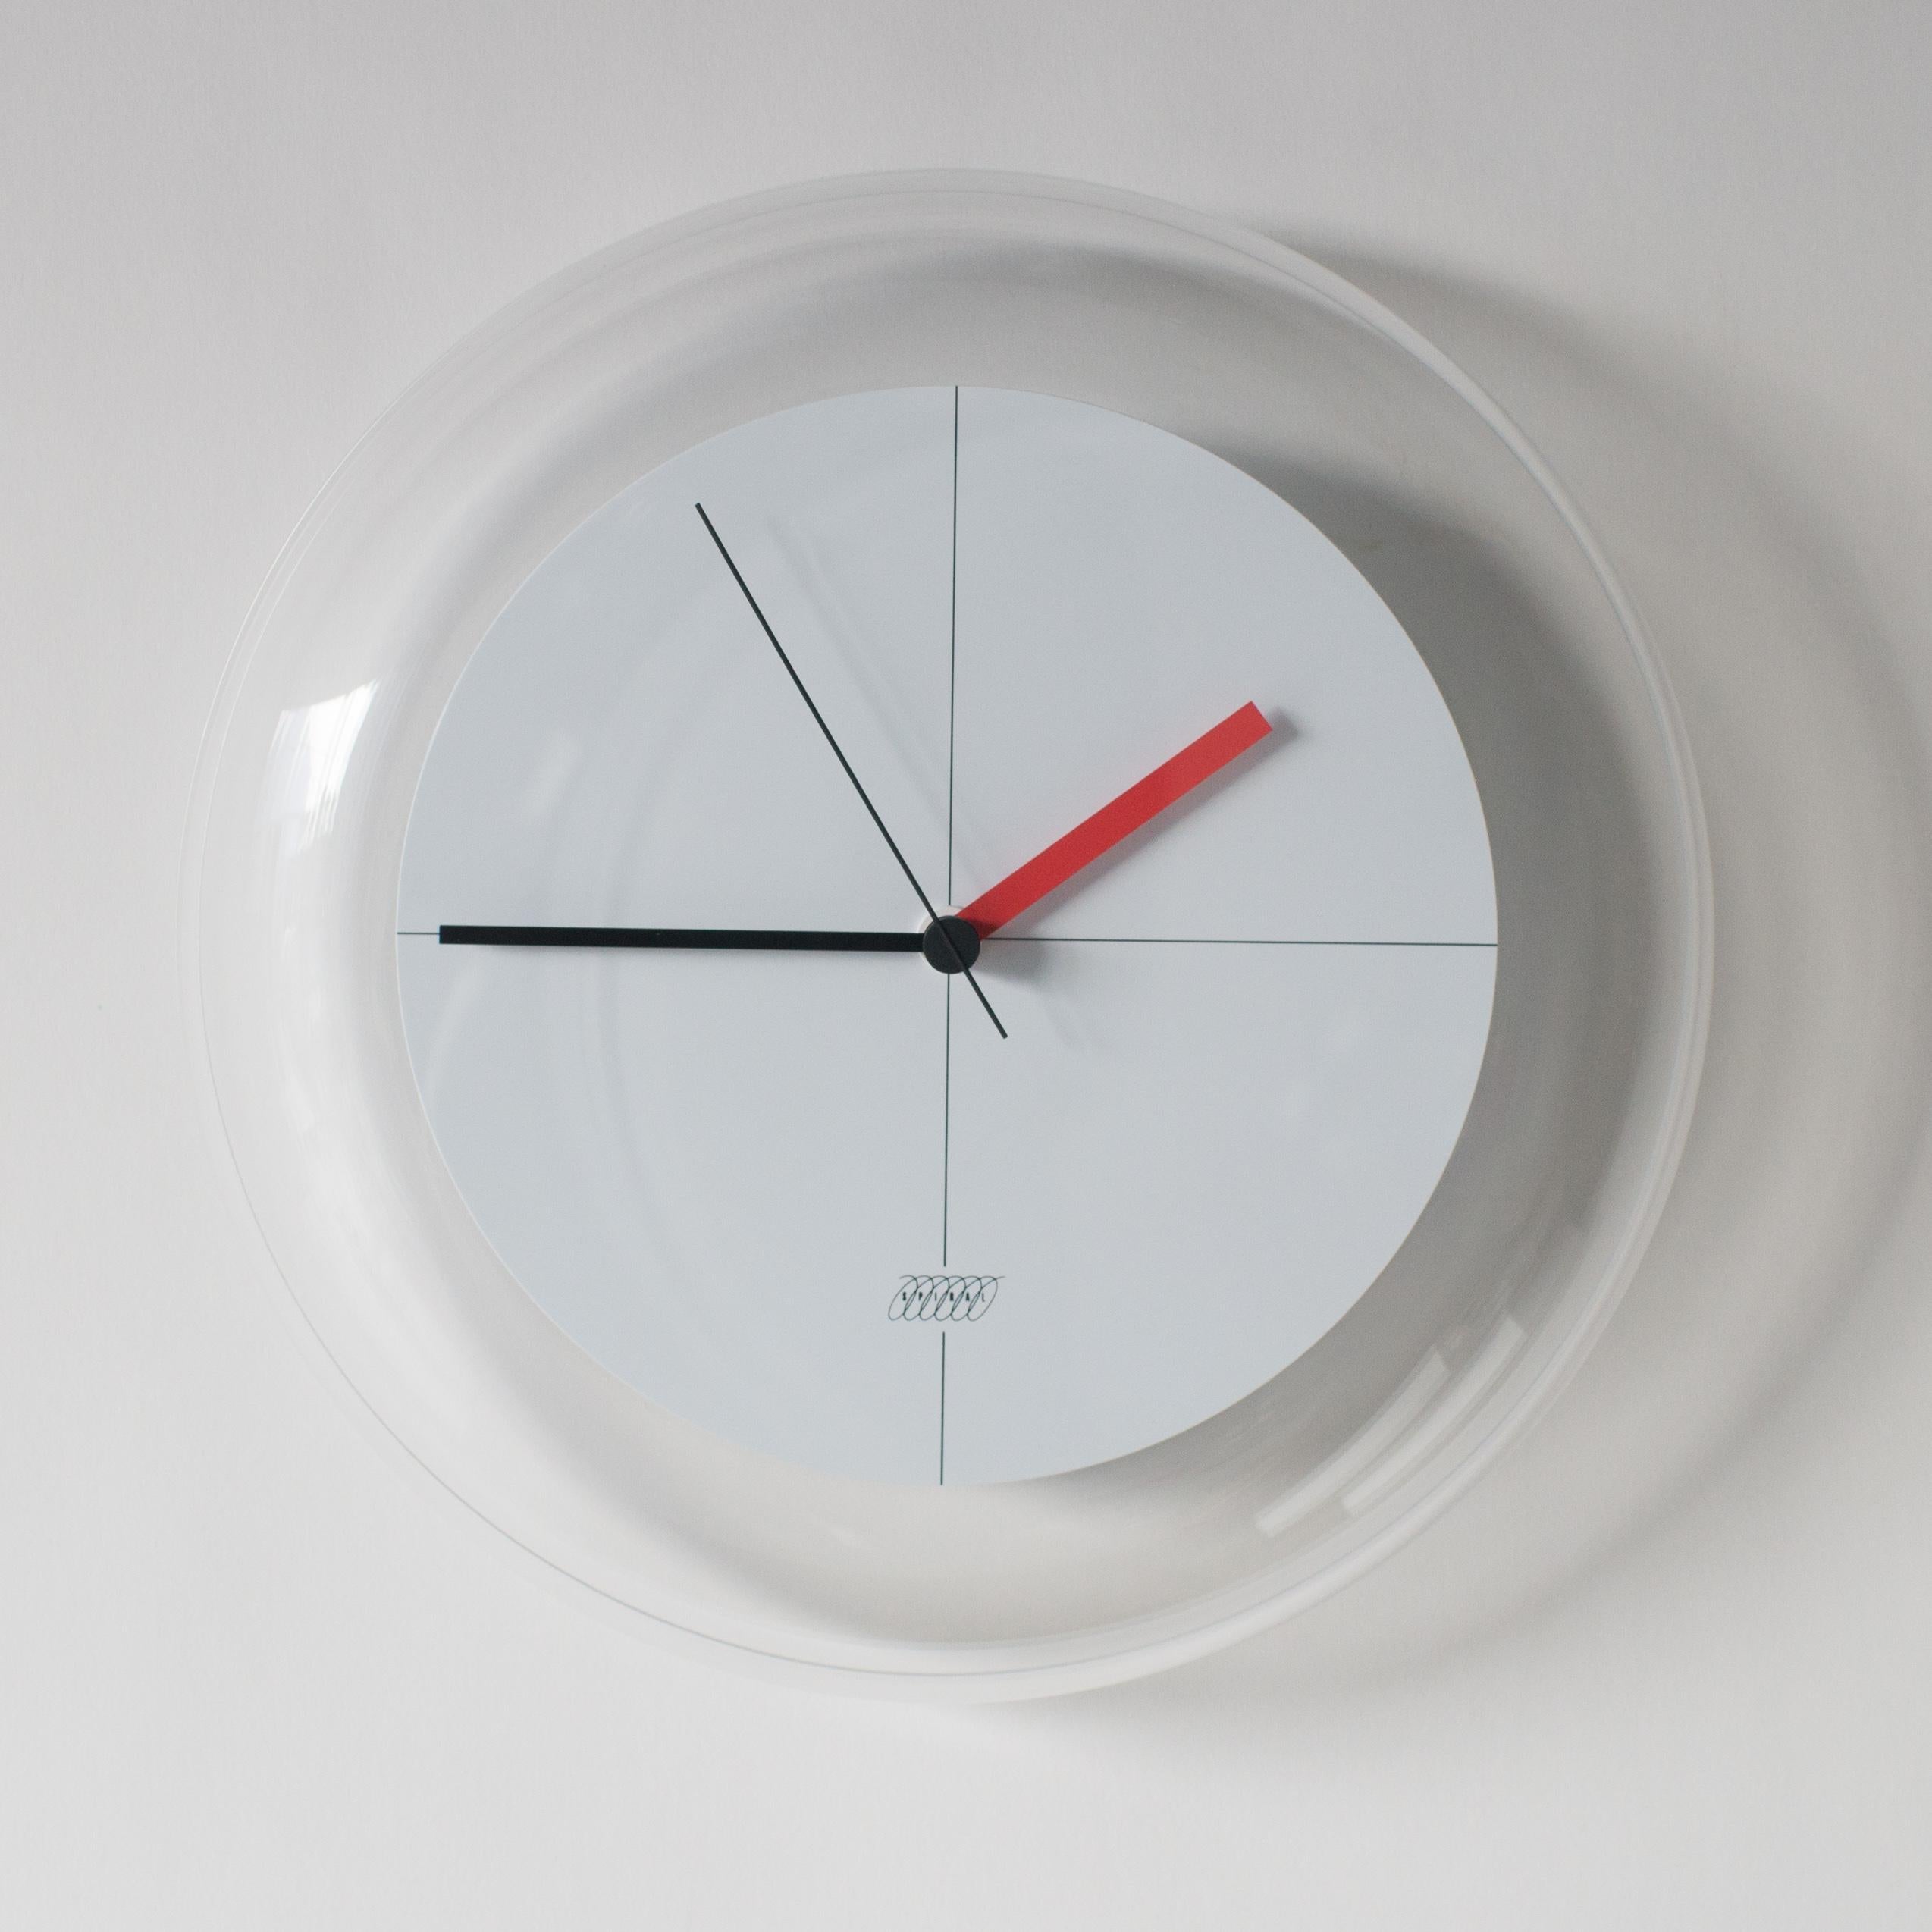 Post-Modern Spiral Clock a Shiro Kuramata Japanese Zen Minimal Postmodern